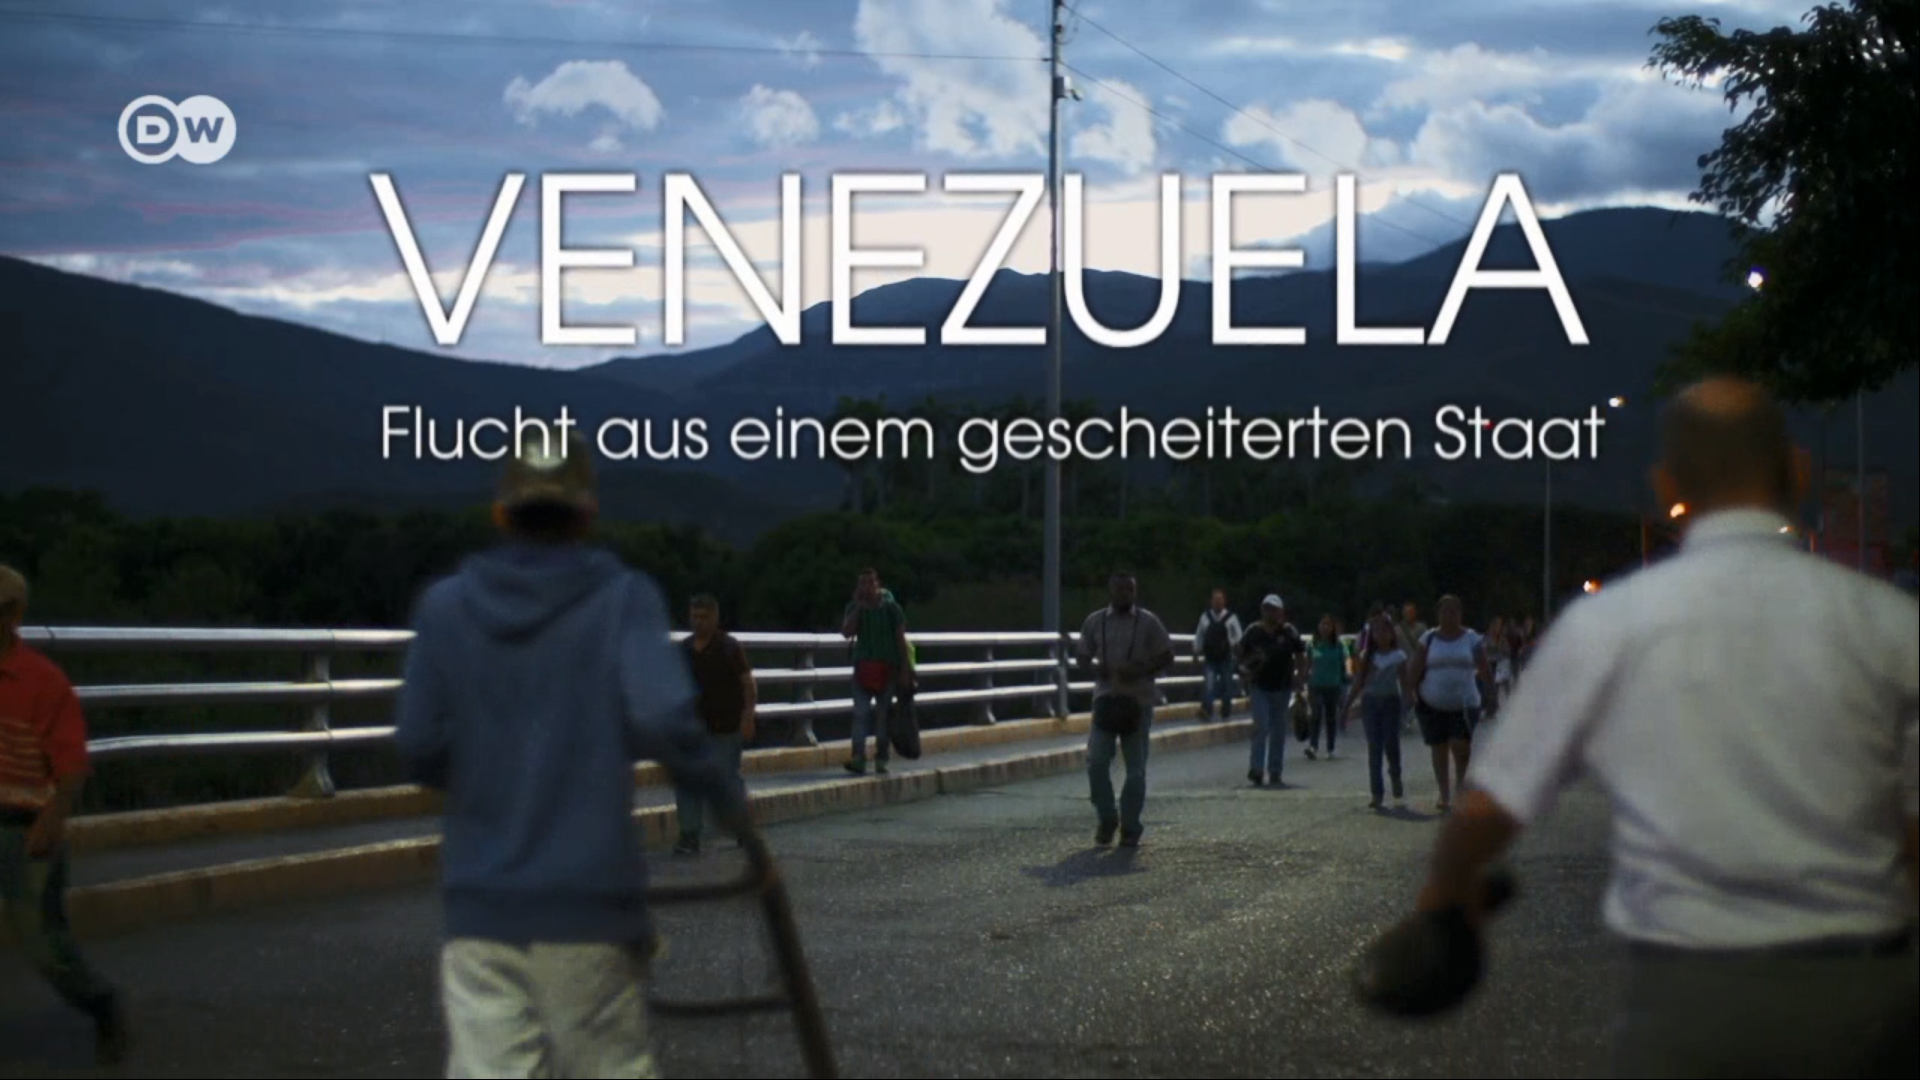 https://www.dw.com/de/venezuela-flucht-aus-einem-zerstörten-land/av-44903303?maca=de-EMail-sharing